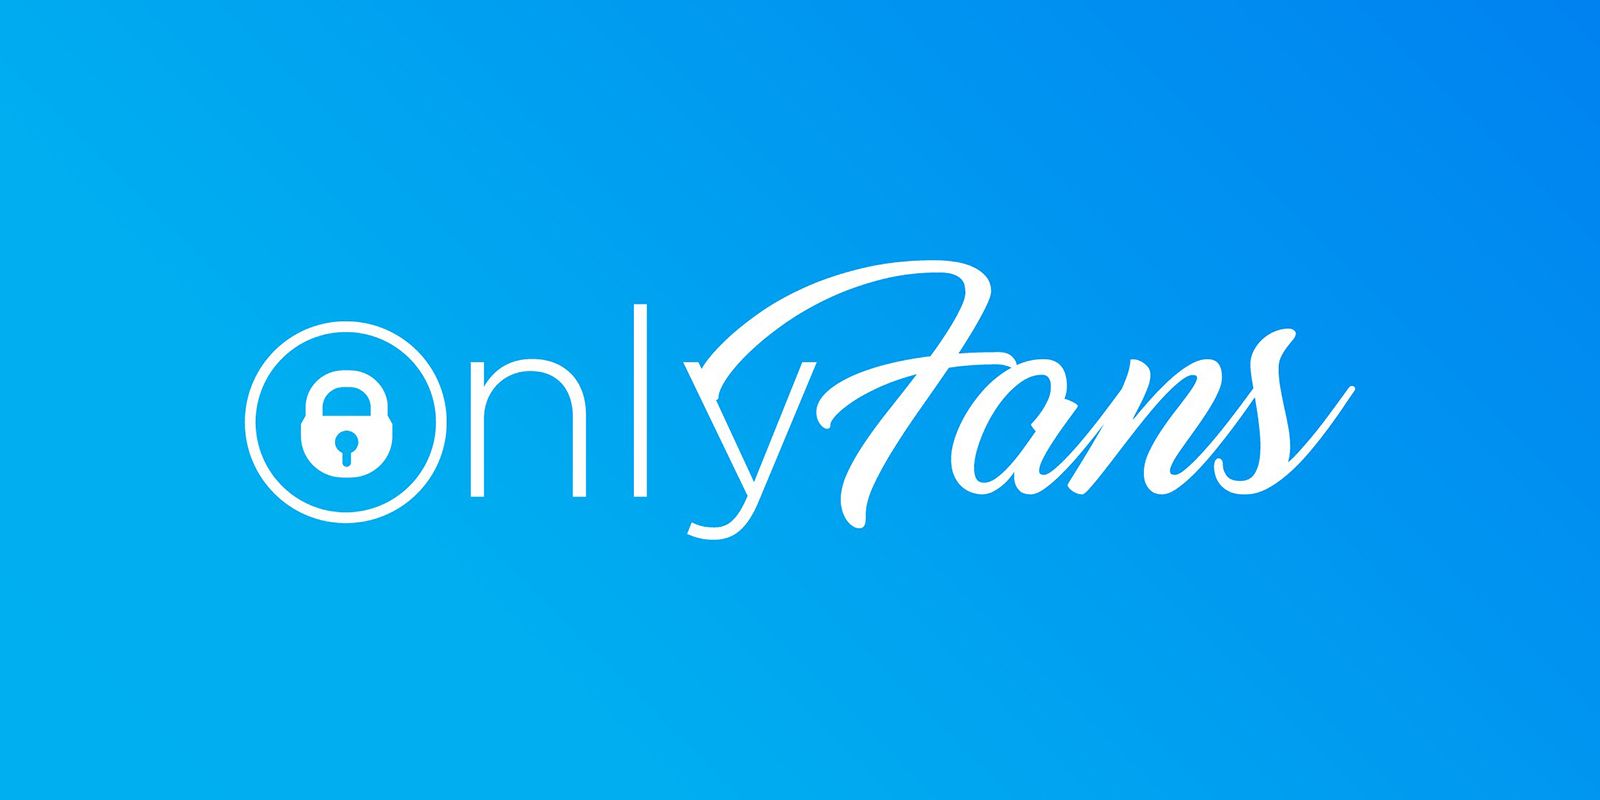 На OnlyFans изменятся правила размещения эротического контента